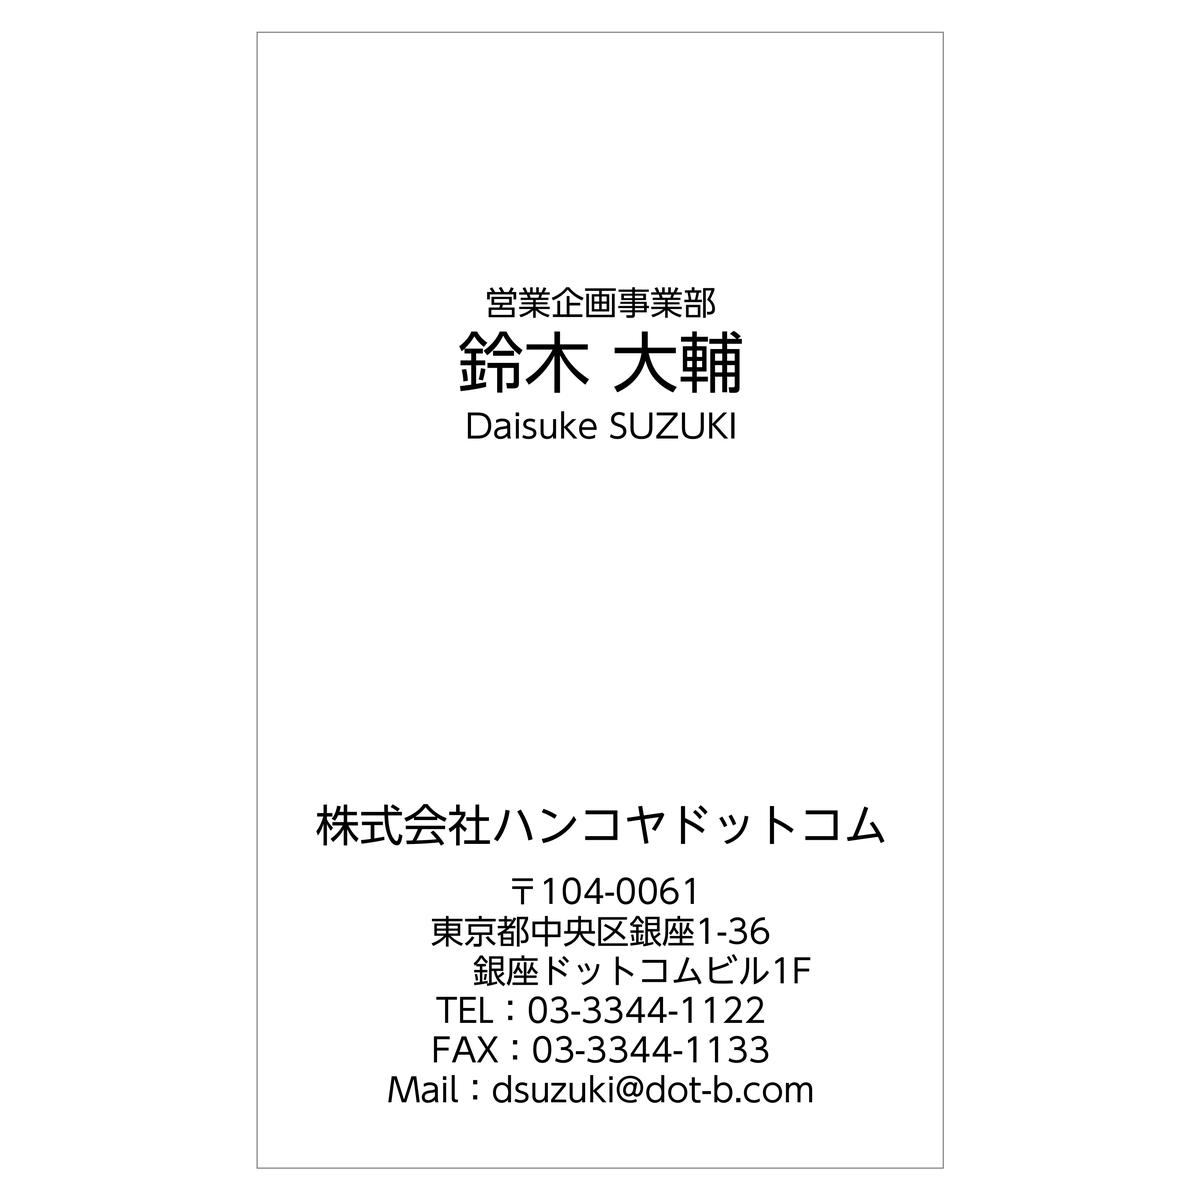 かんたんデザイン入稿名刺 タテ向き 両面モノクロ印刷 E4-01 英語表記